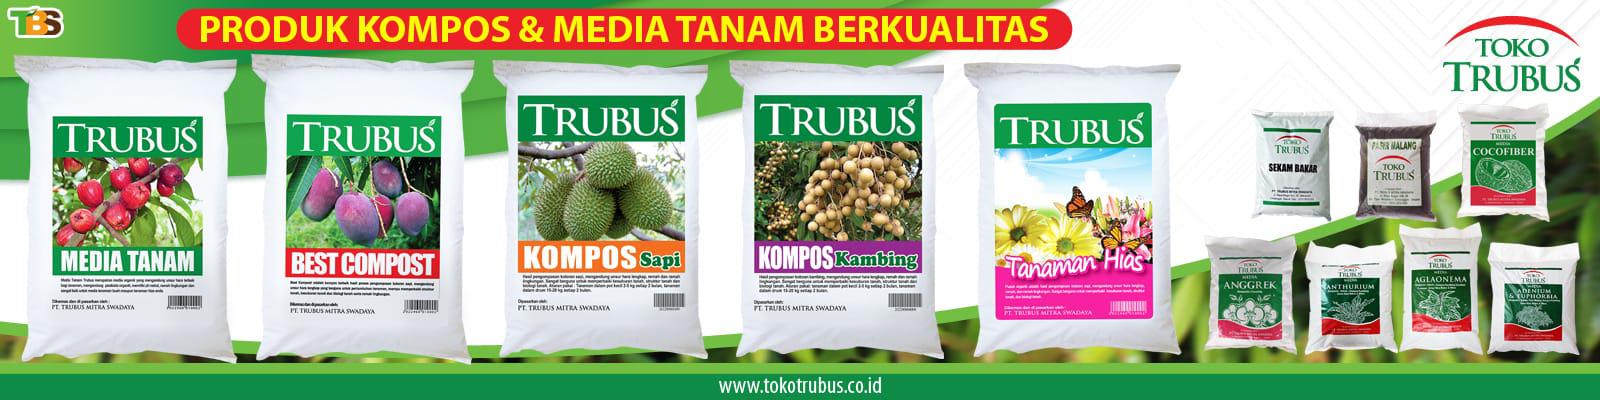 Toko Trubus Online Shop